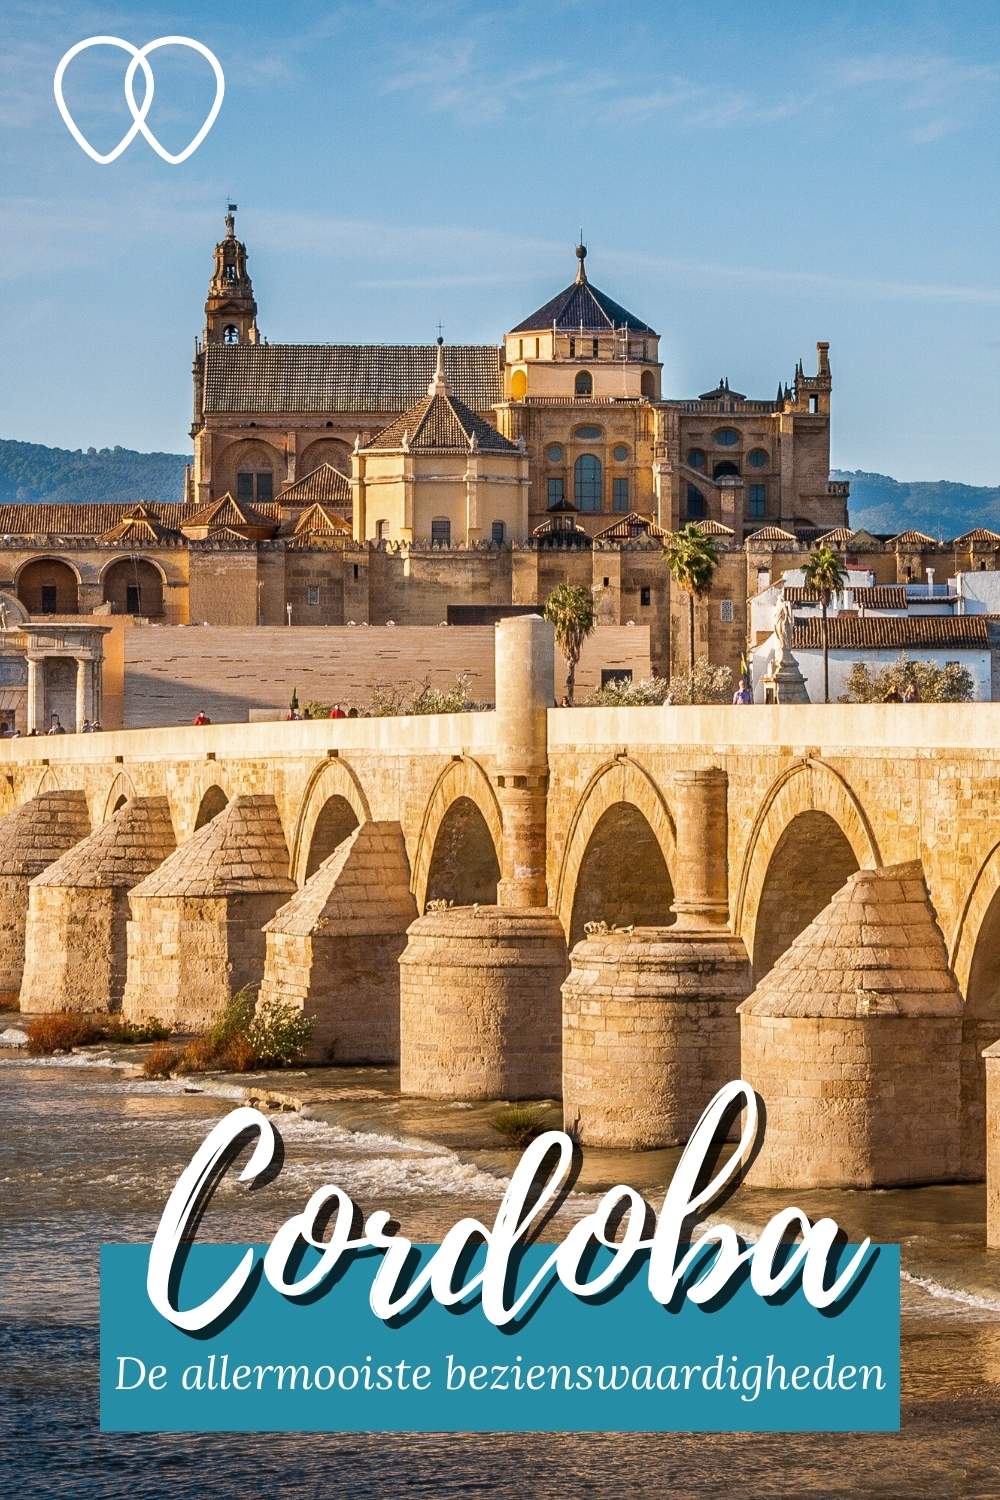 Cordoba, Spanje: zin in een stedentrip Cordoba? Ontdek de leukste bezienswaardigheden in Cordoba